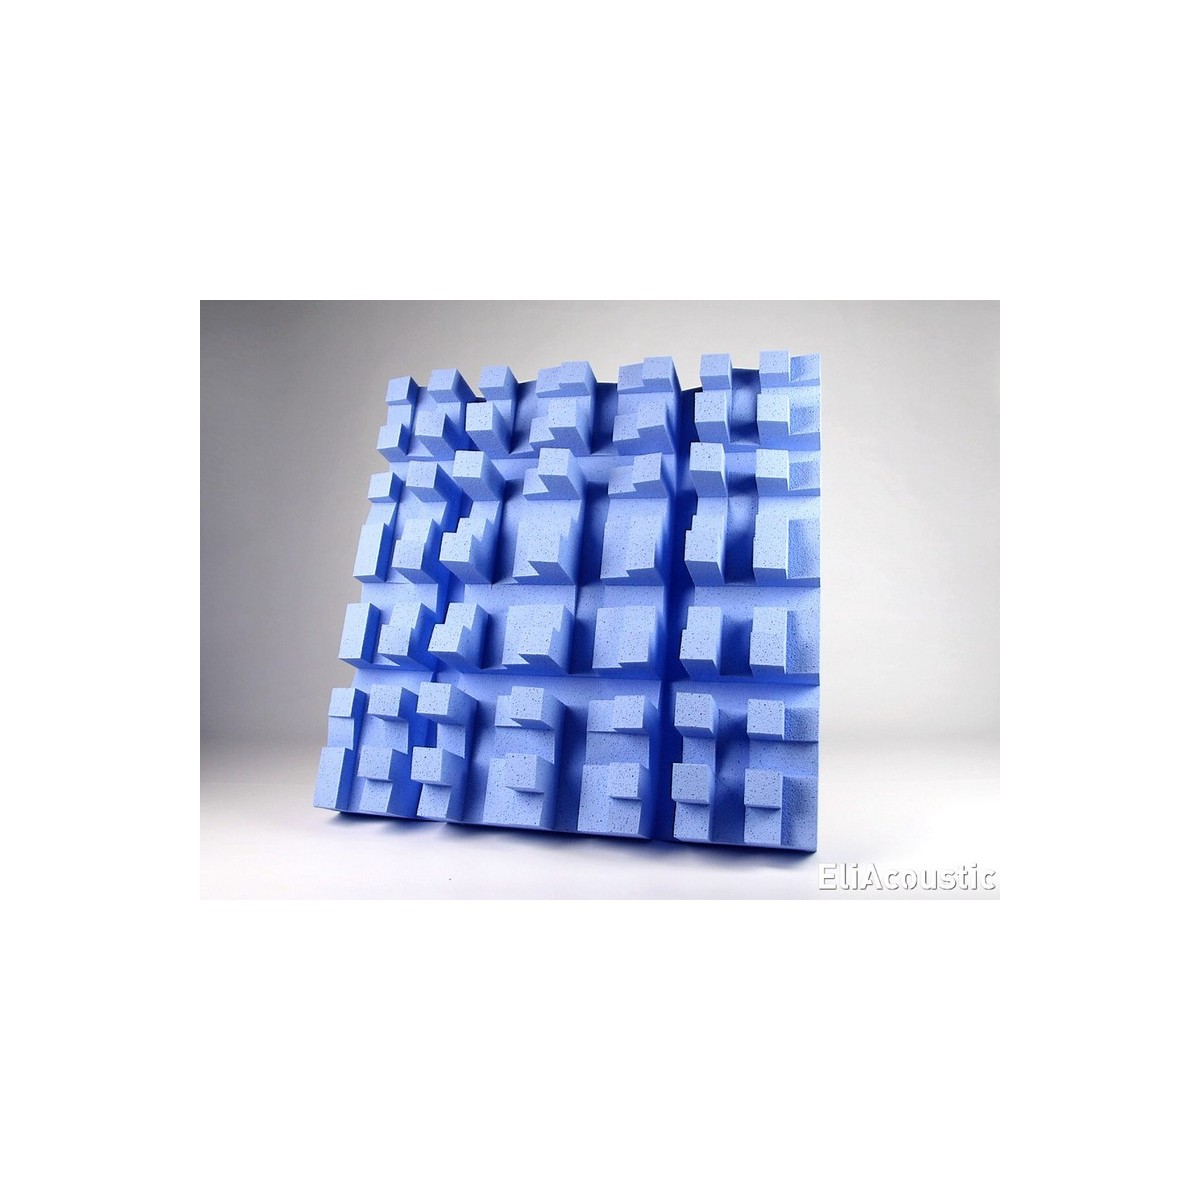 EliAcoustic fussor 3D pure light blue